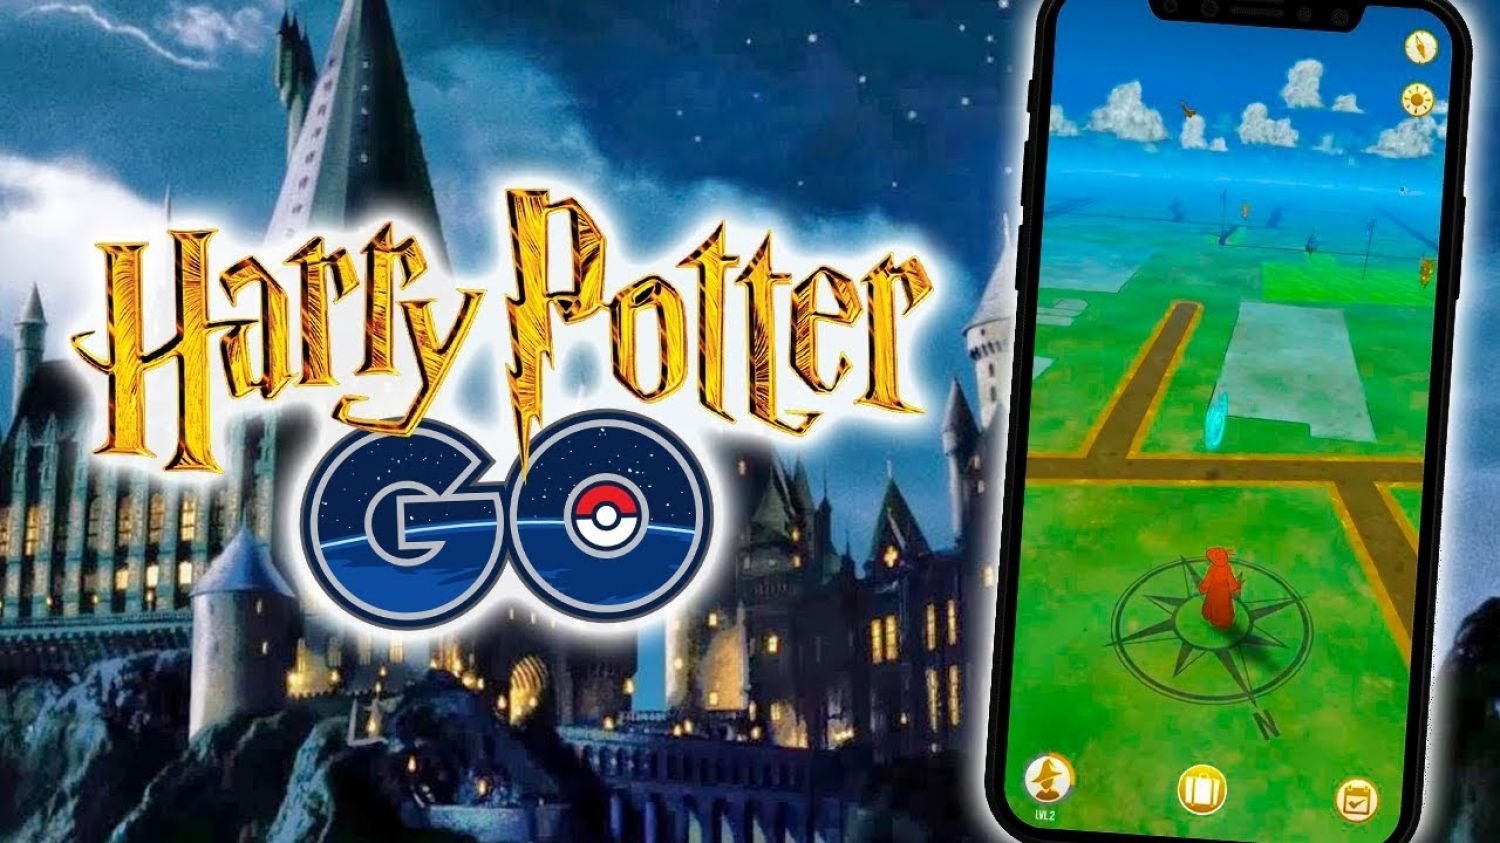 Harry Potter Go confirmé par les créateurs de Pokemon Go